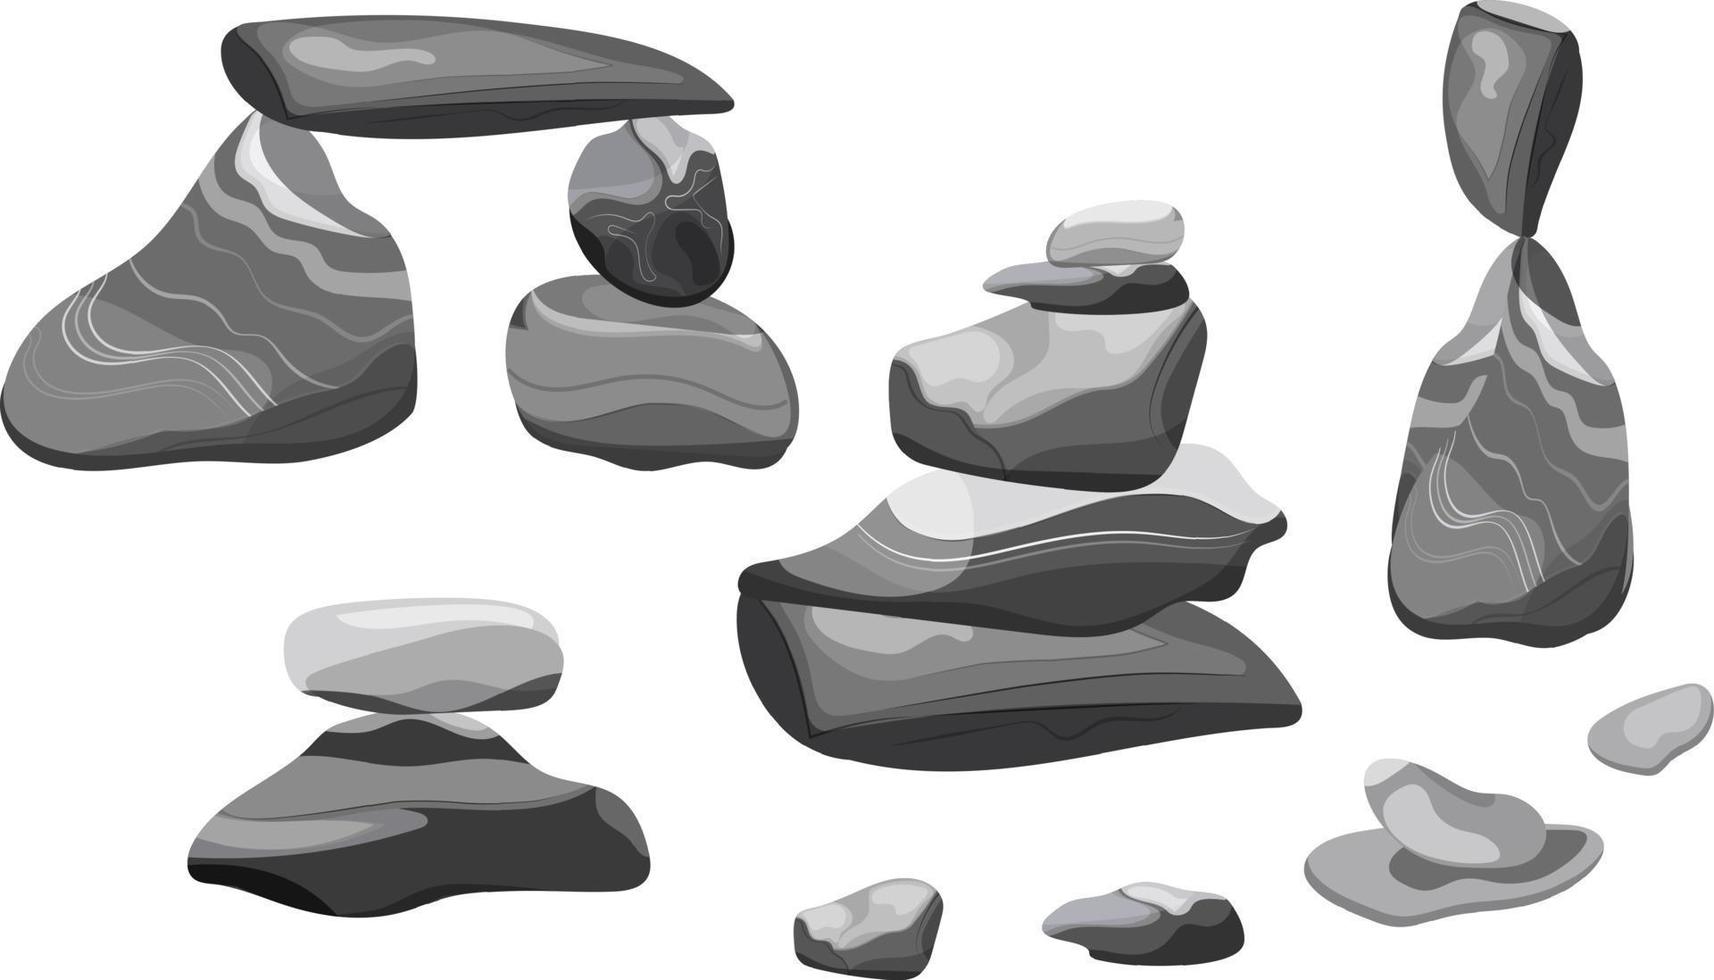 collezione di pietre e impianti di vario forme.costiere ciottoli, ciottoli, ghiaia, minerali e geologica formazioni.roccia frammenti, massi e edificio Materiale. vettore